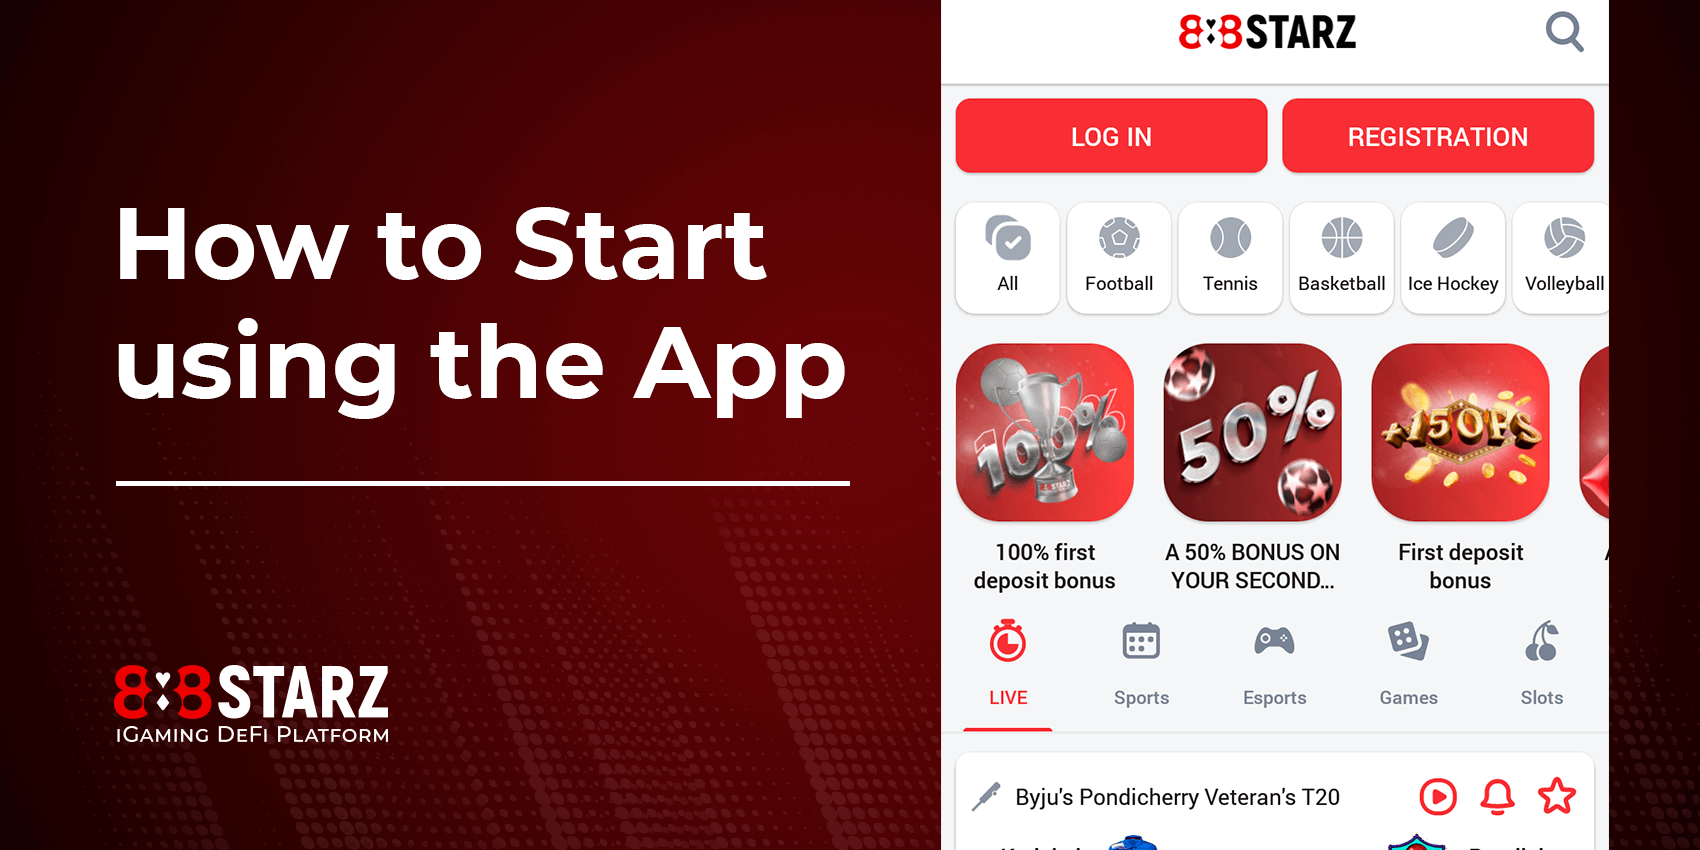 Jak zacząć korzystać z aplikacji 888Starz?